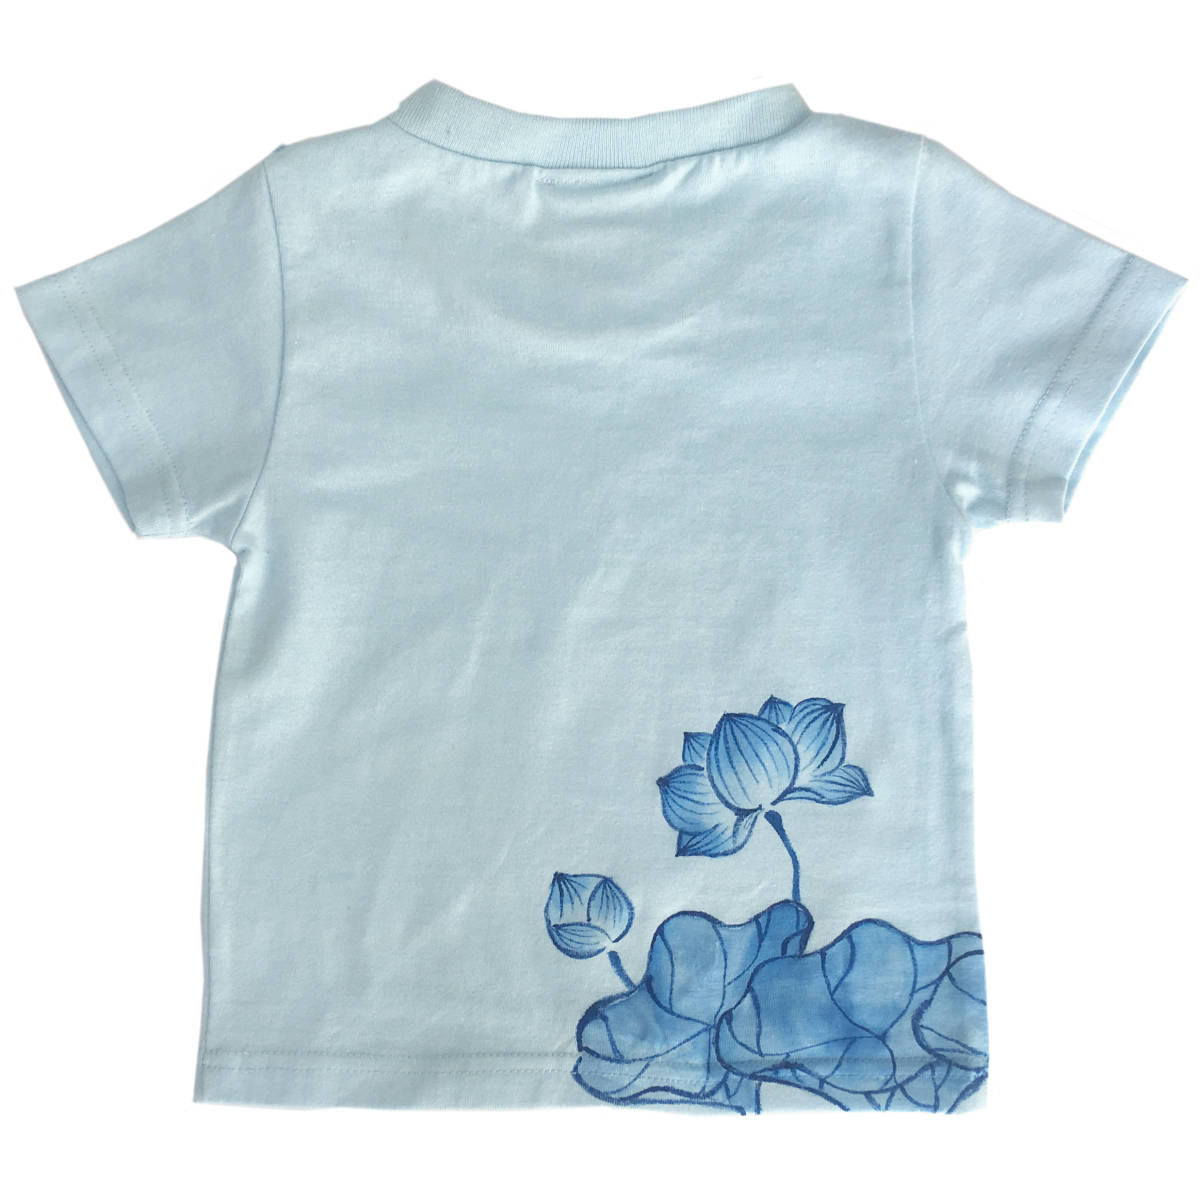 キッズ Tシャツ 110サイズ ブルー 蓮柄Tシャツ 手描きで描いた蓮の花柄Tシャツ 半袖 和柄 和風 レトロ ハンドメイド_画像4